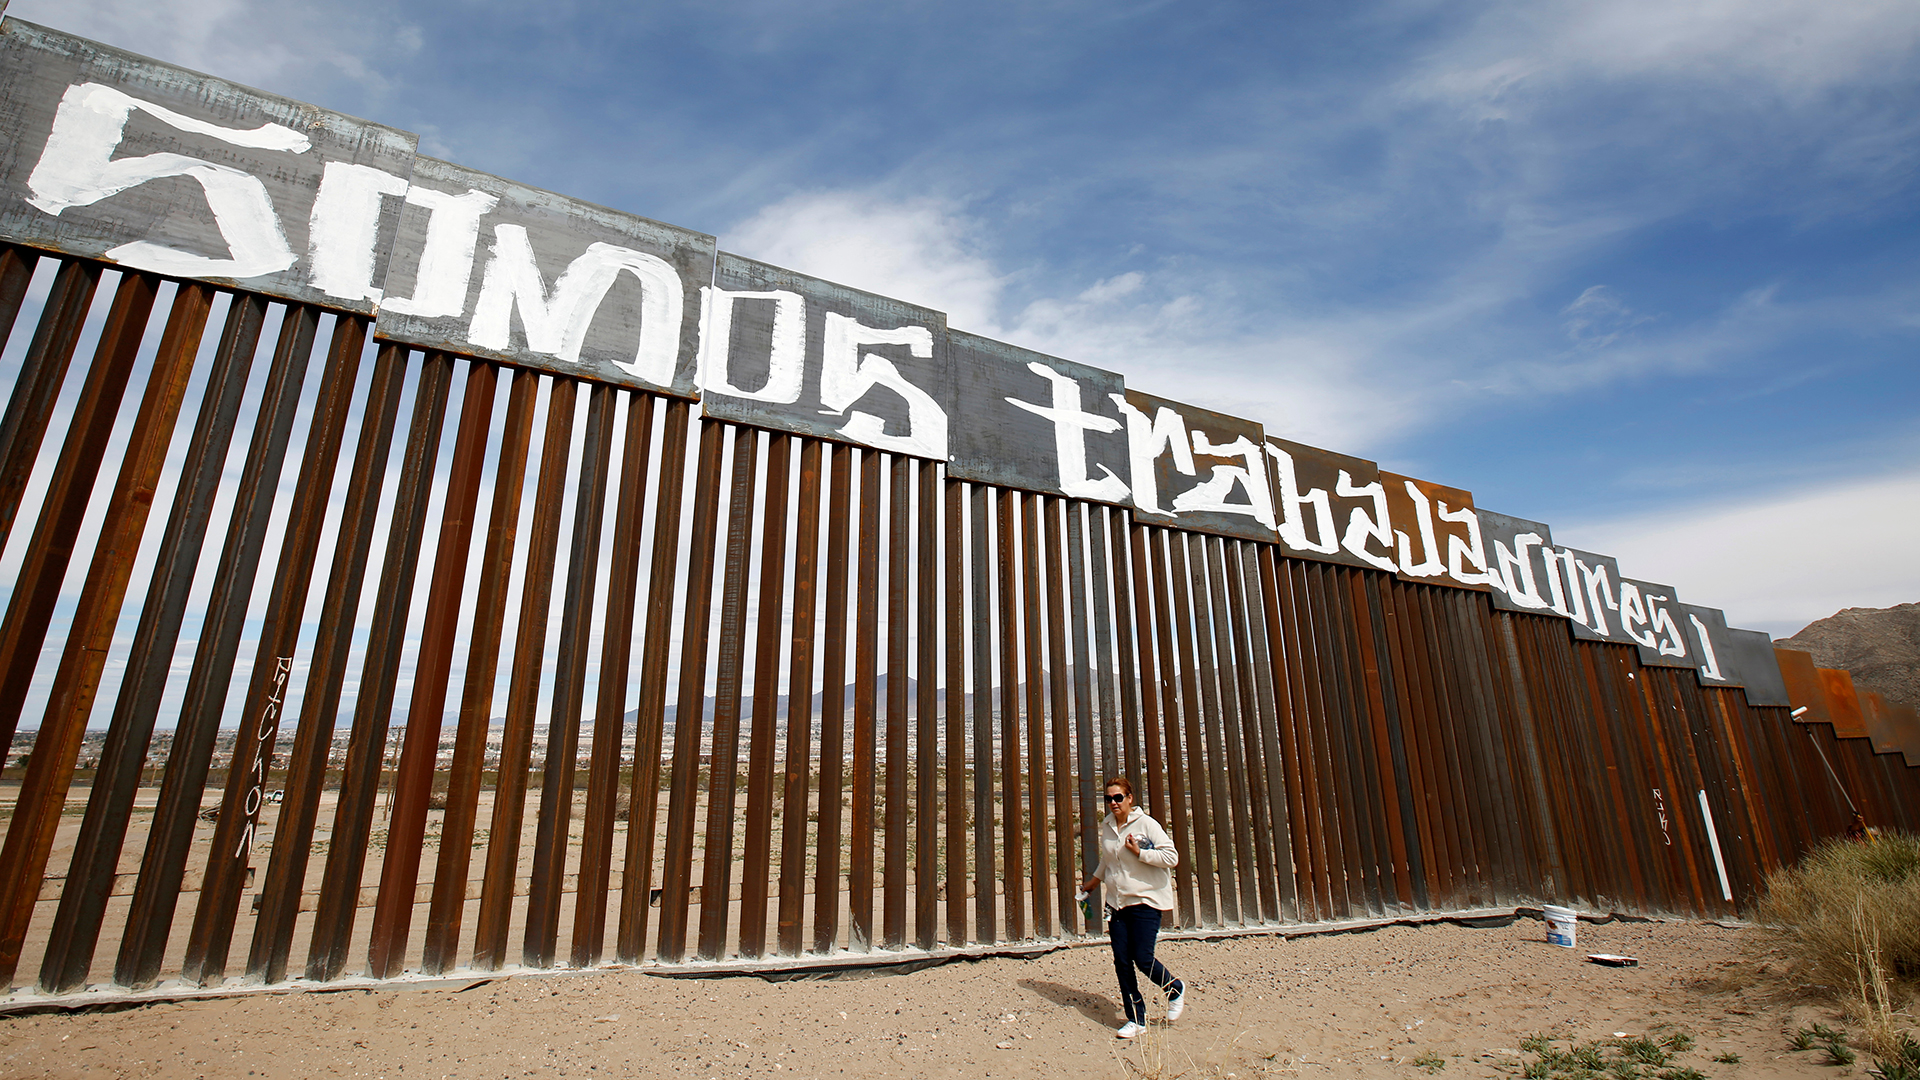 El 10% de las empresas que optan a construir el muro de Trump son hispanas